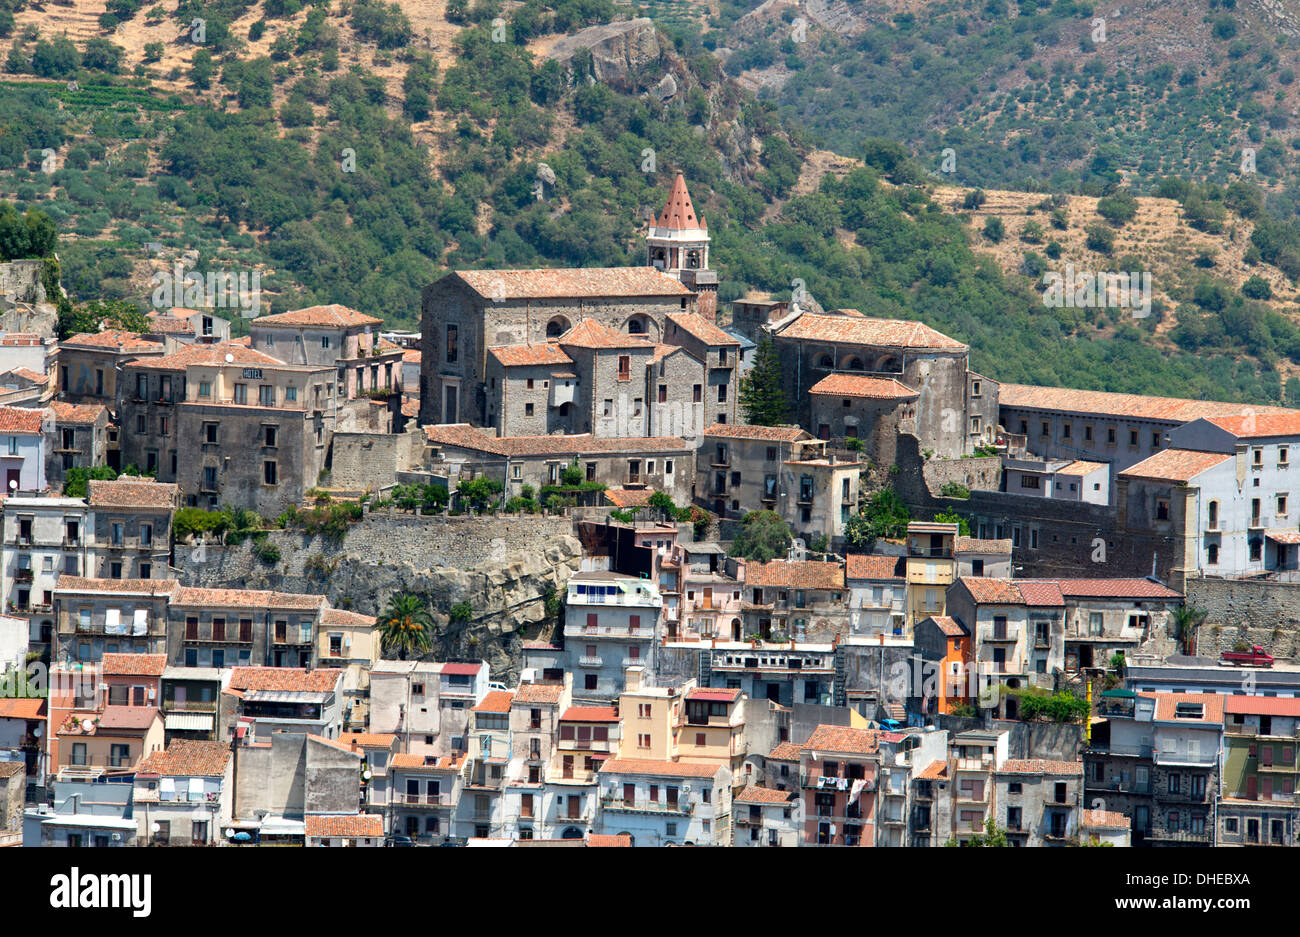 La ville médiévale de Castiglione di Sicilia au-dessus de la vallée d'Alcantra près de Taormina, Sicile, Italie, Europe Banque D'Images